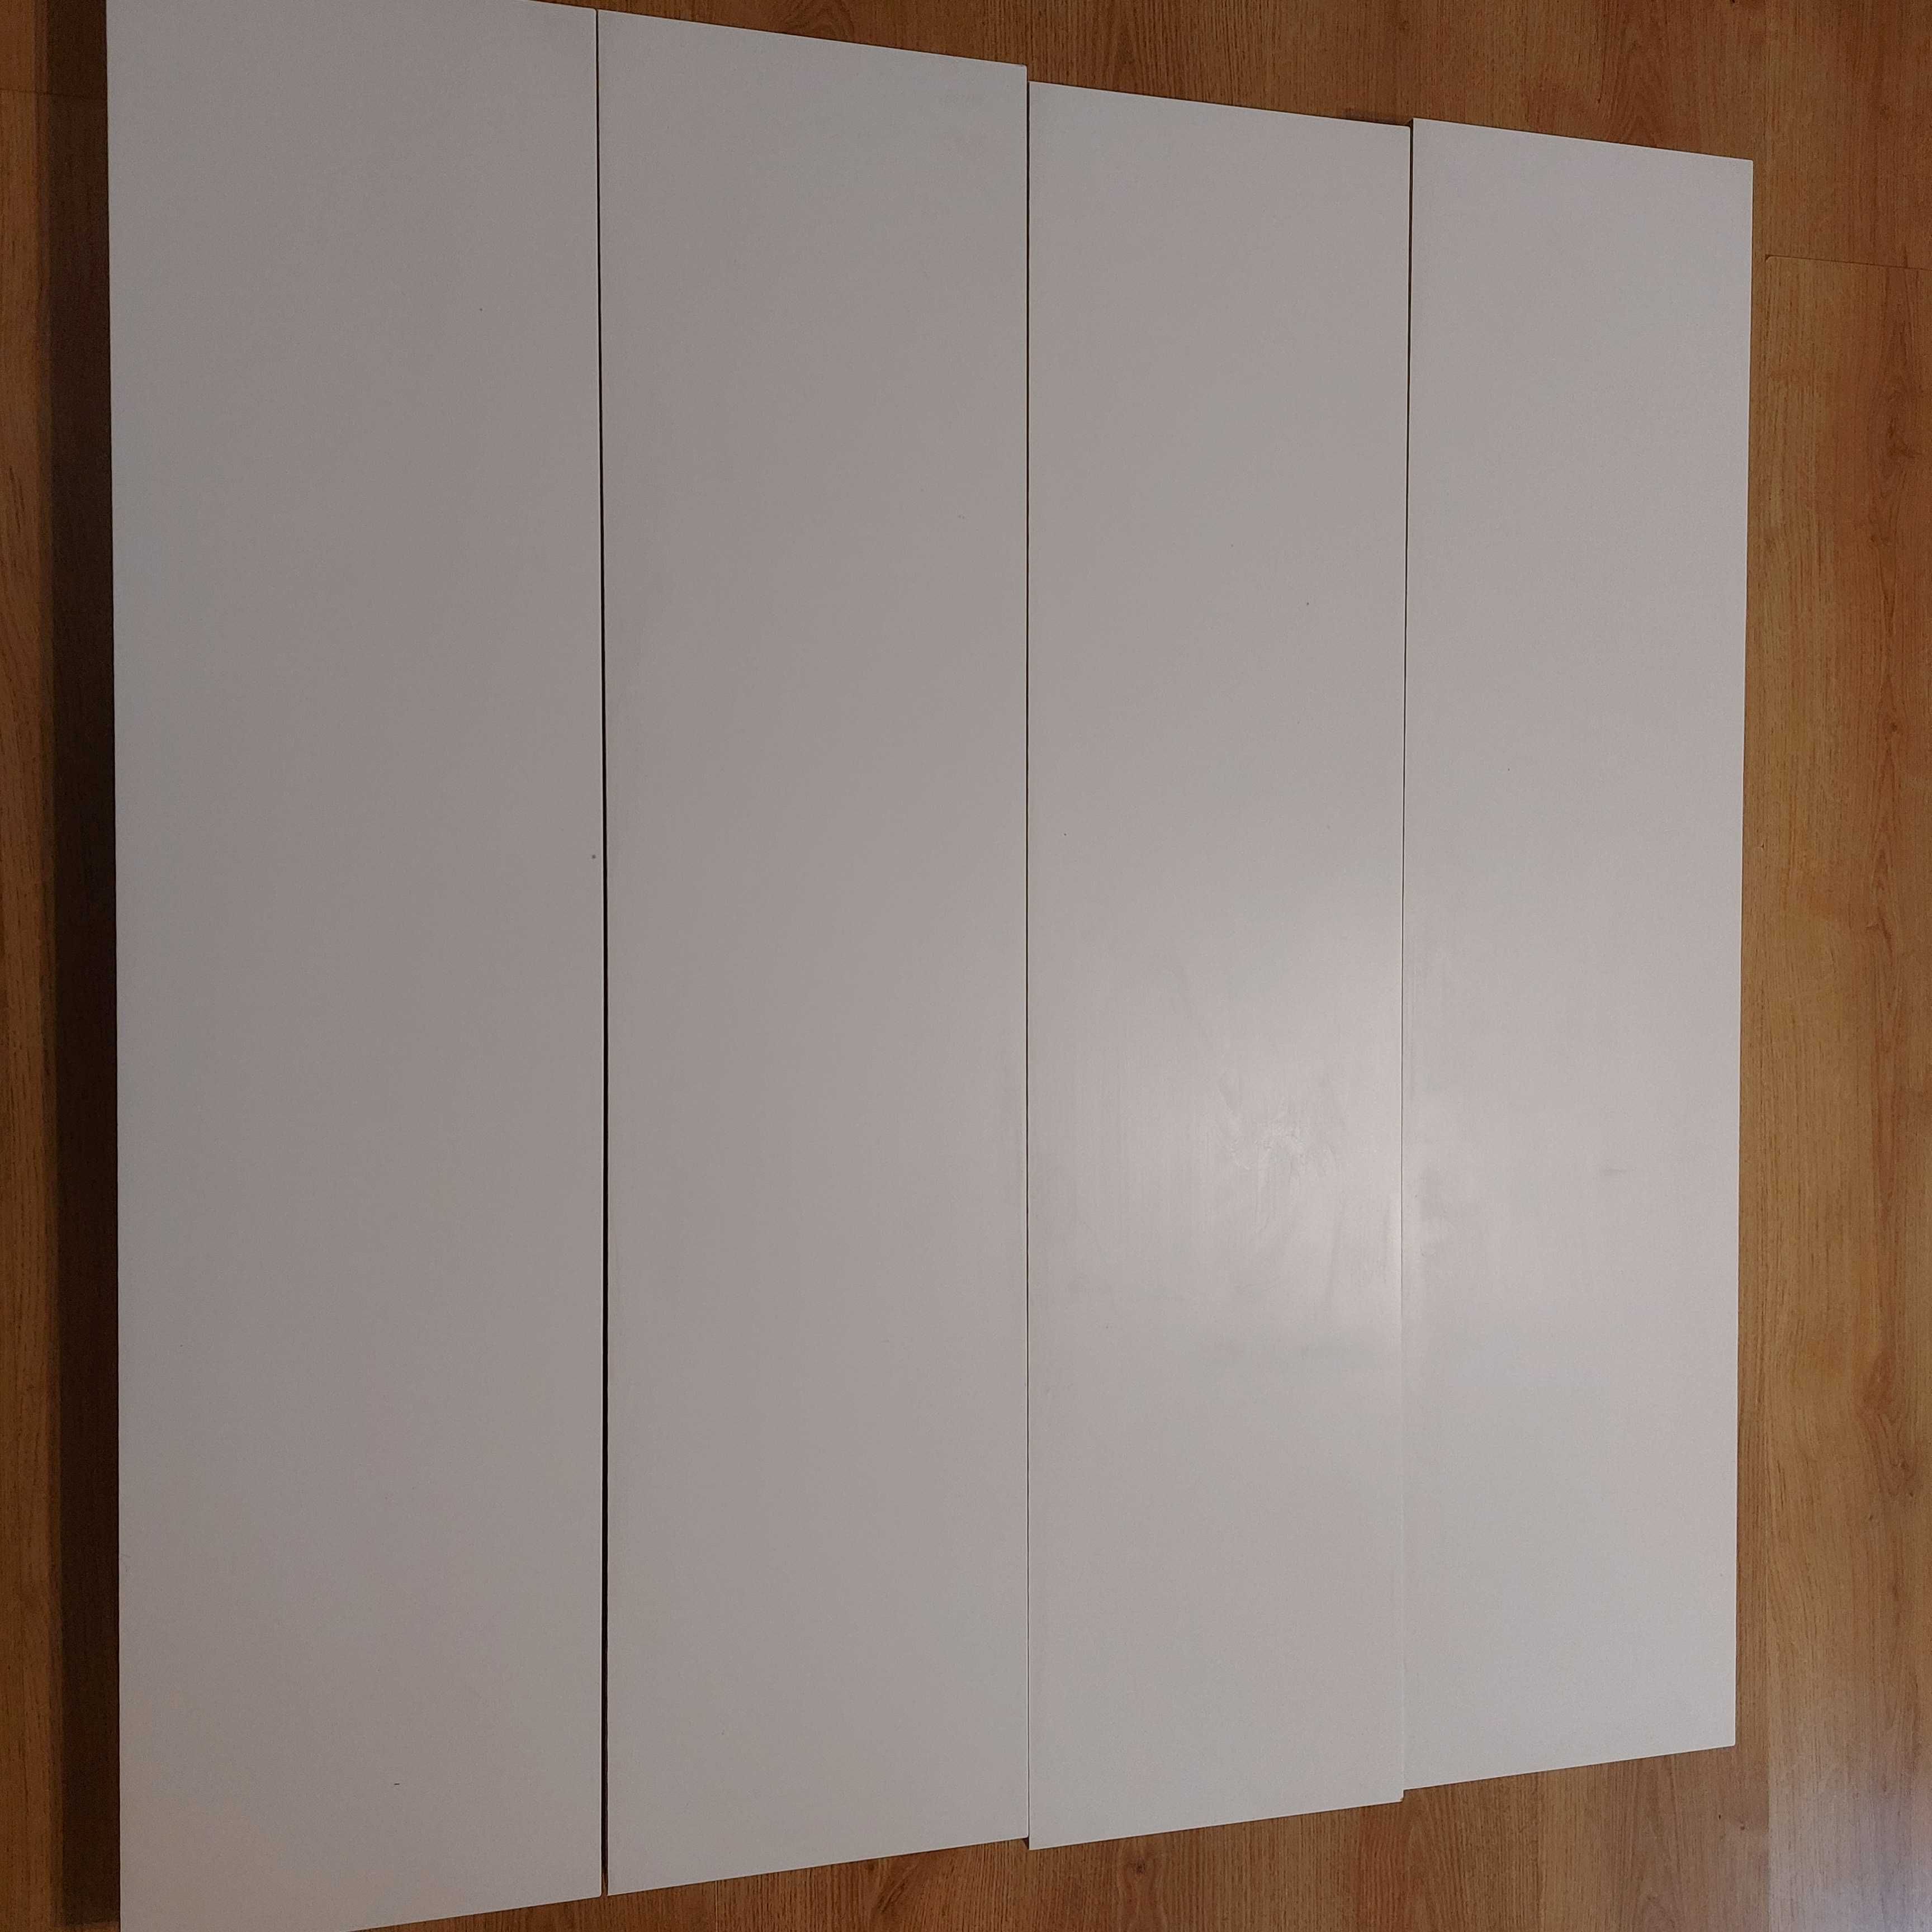 Półka Ikea lack biała 110x24. 2 sztuki 60 pln.